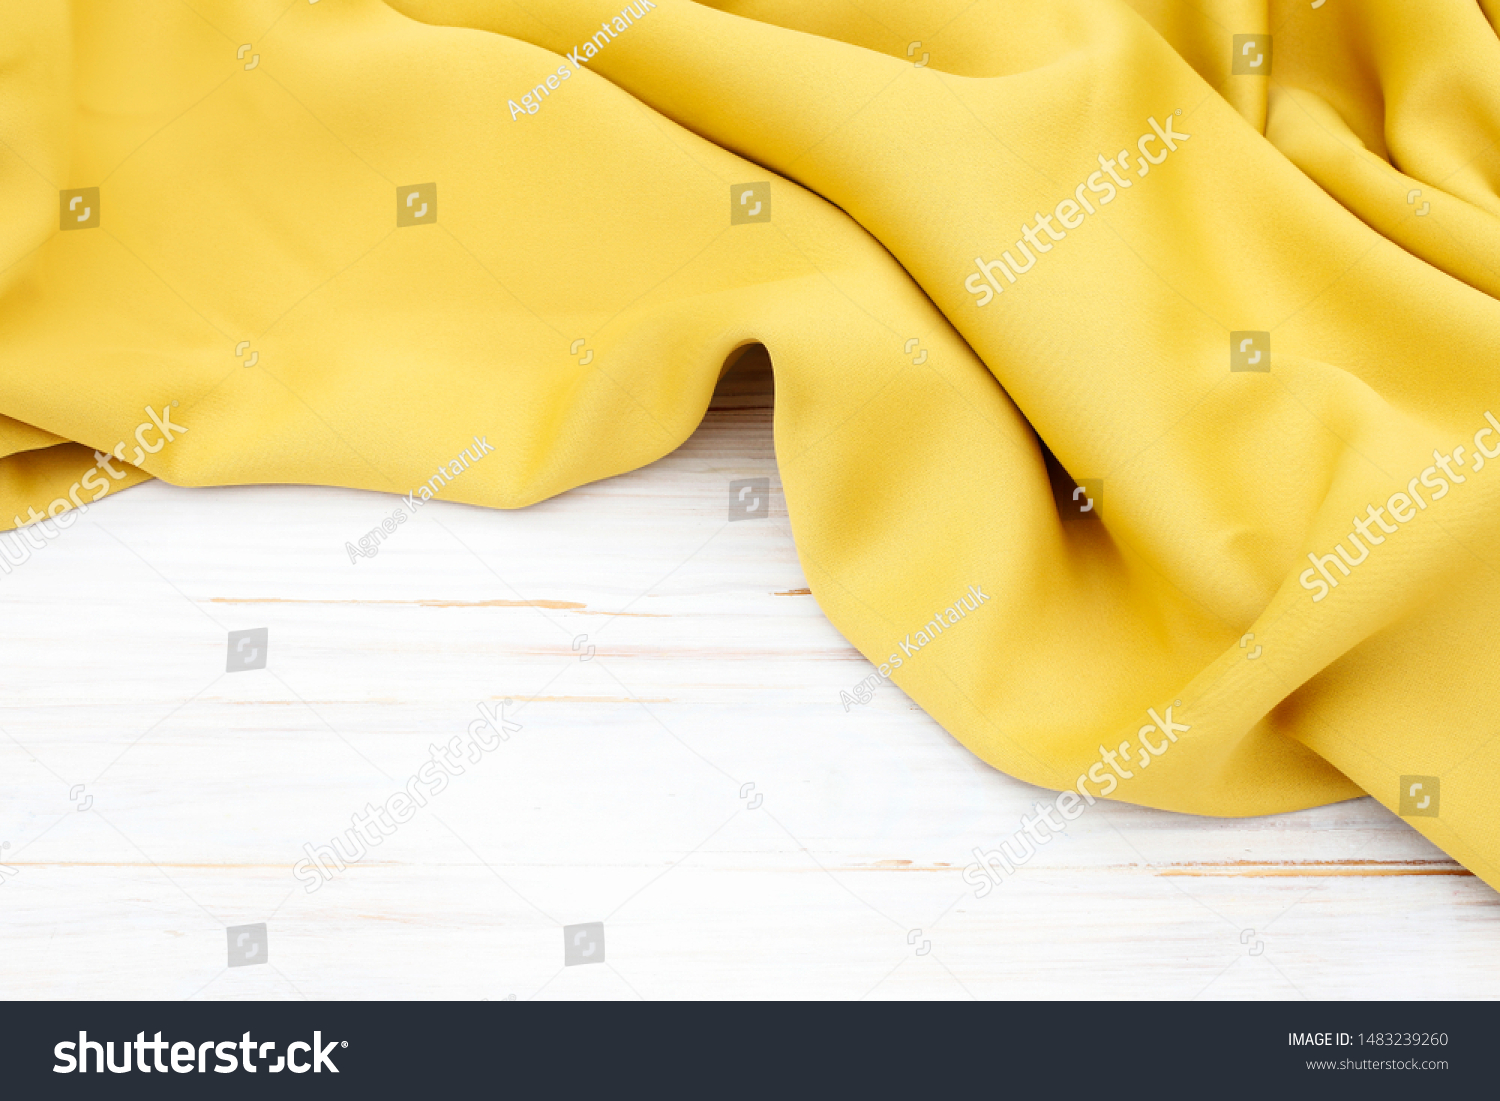 Soft yellow fabric, fashion background. #1483239260